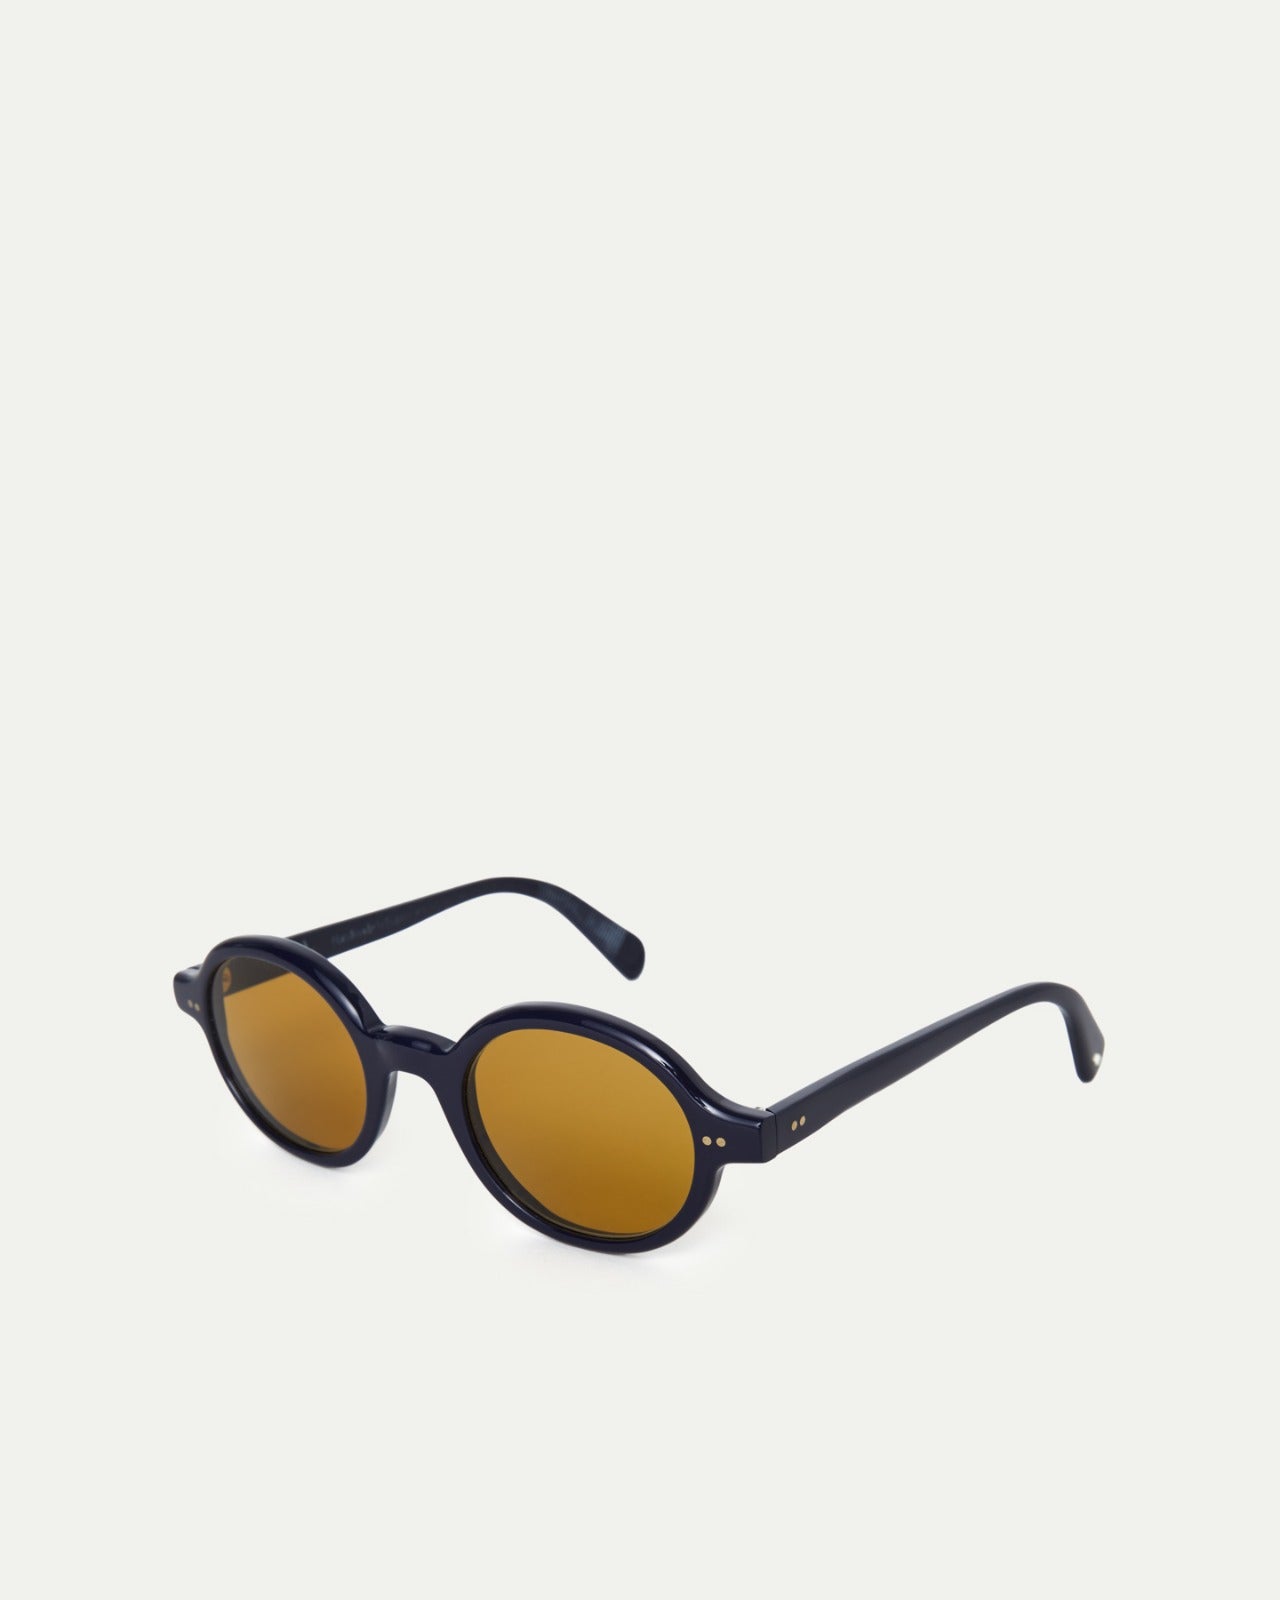 LAPAZ X ALF Sunglasses